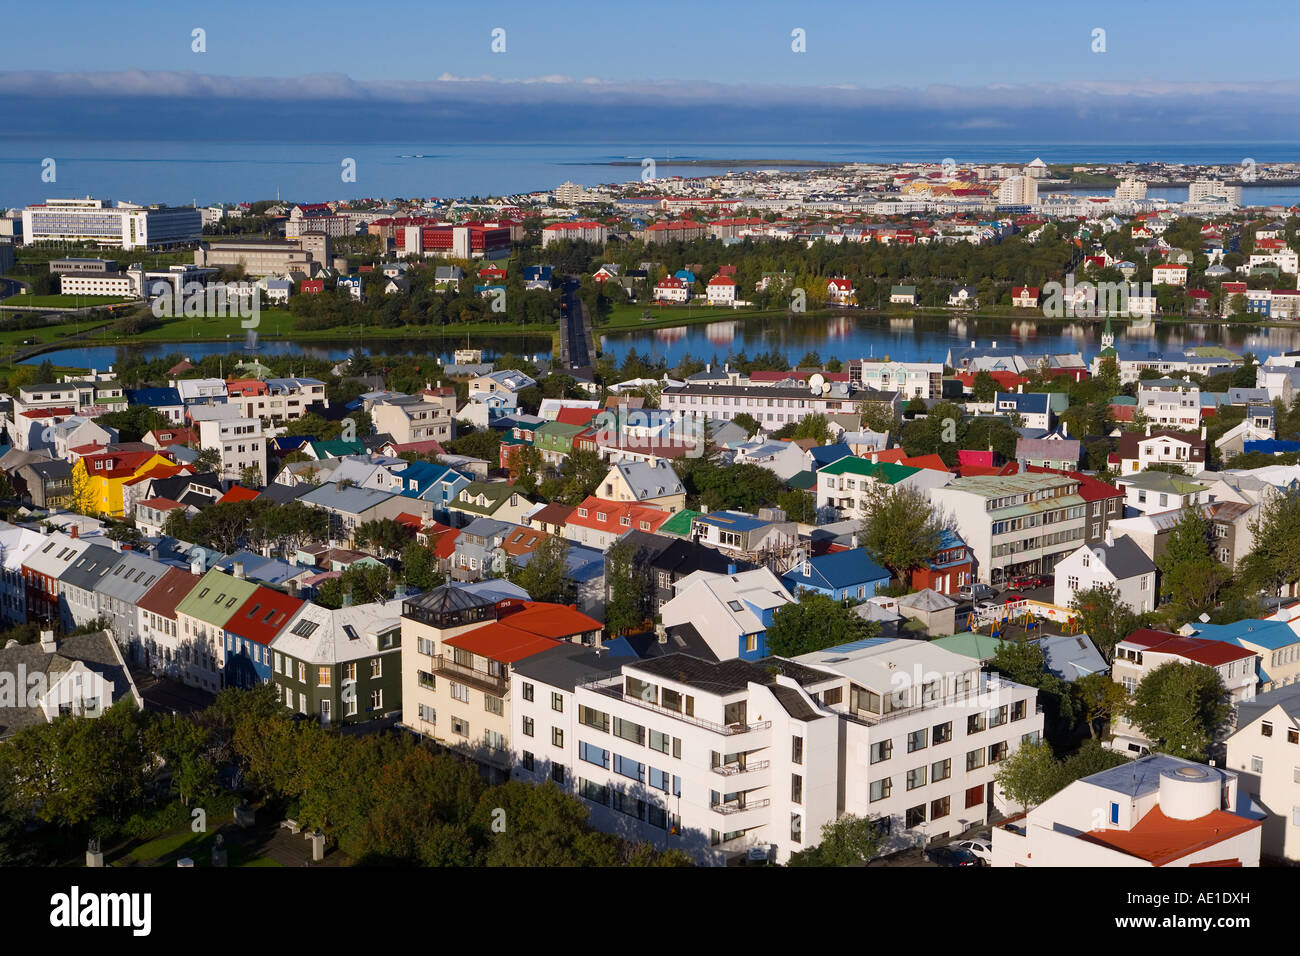 L'Islande Reykjavik Vue aérienne de basse de Hallgrimskirkja les maisons colorées bâtiments commerciaux et du port de la capitale Banque D'Images